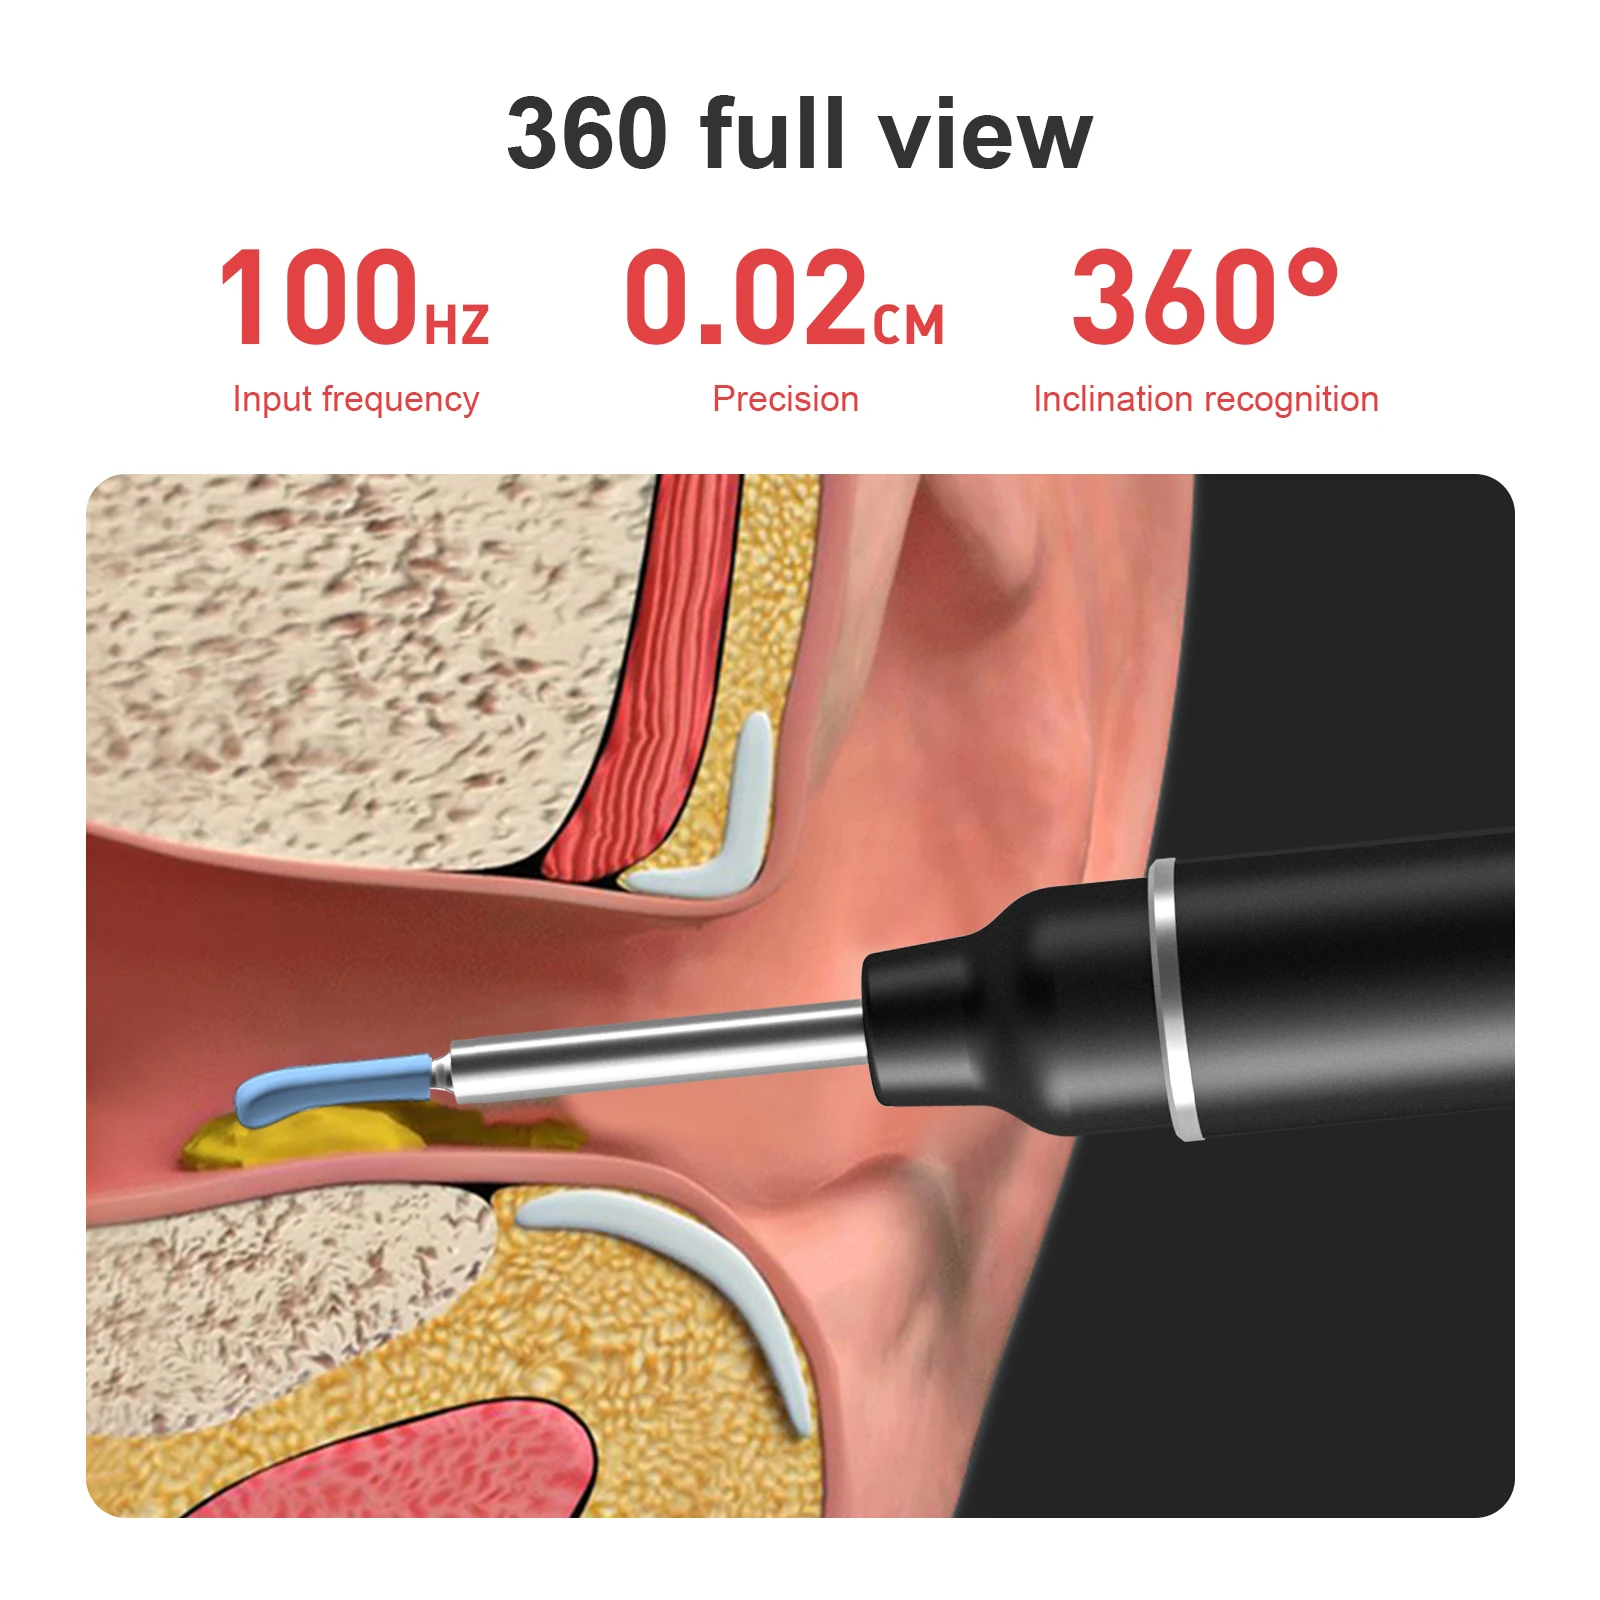 WIFI pametan vizualni endoskop za uklanjanje ušni vosak 3 milijuna piksela HD kamera Električni pročišćivač uši za snimanje video zapisa i fotografija2